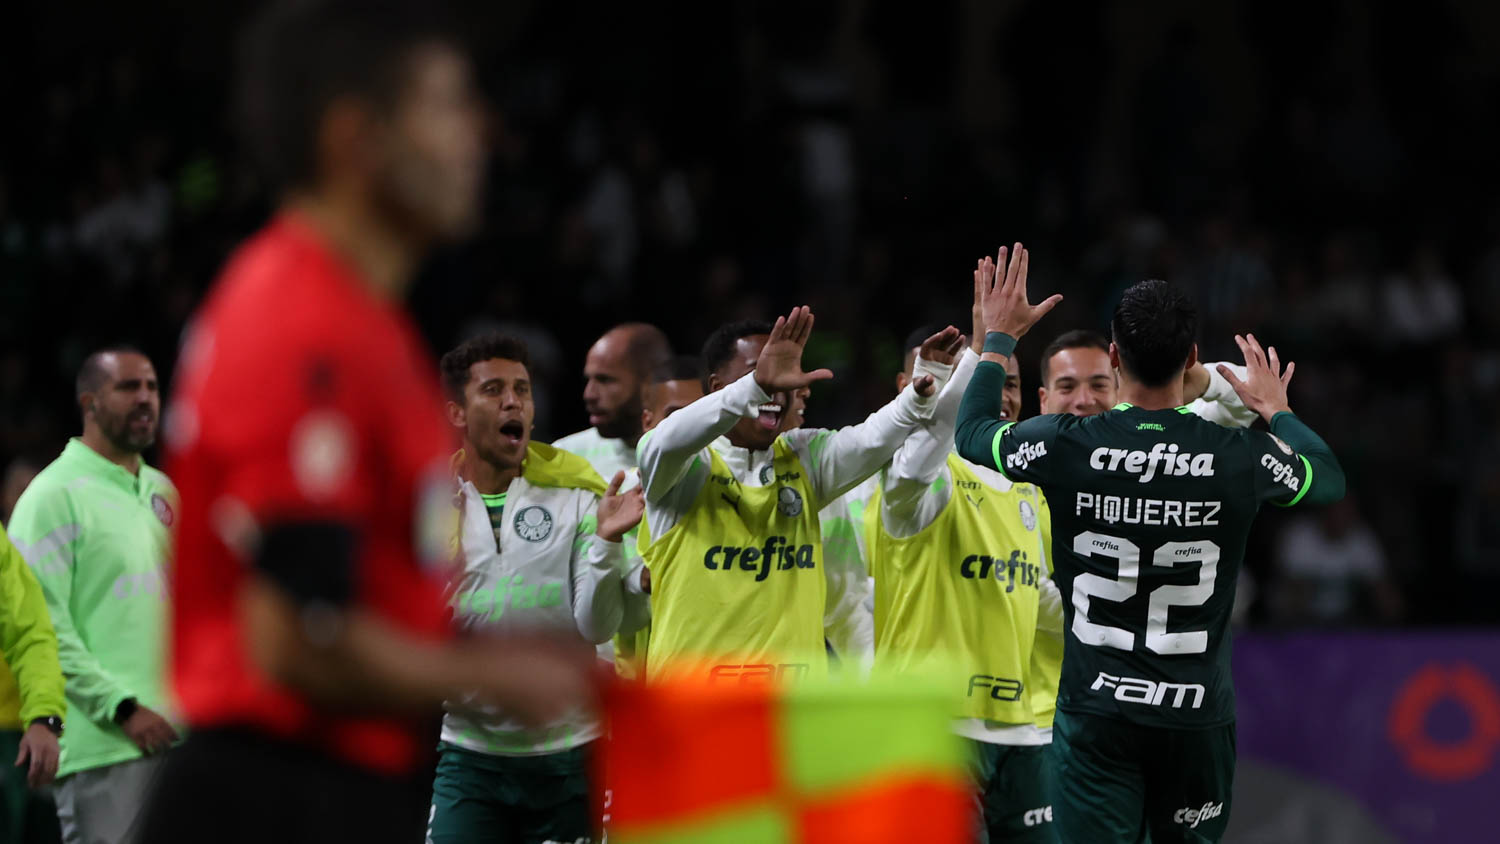 Vidente diz quem vence o jogo Botafogo x Palmeiras